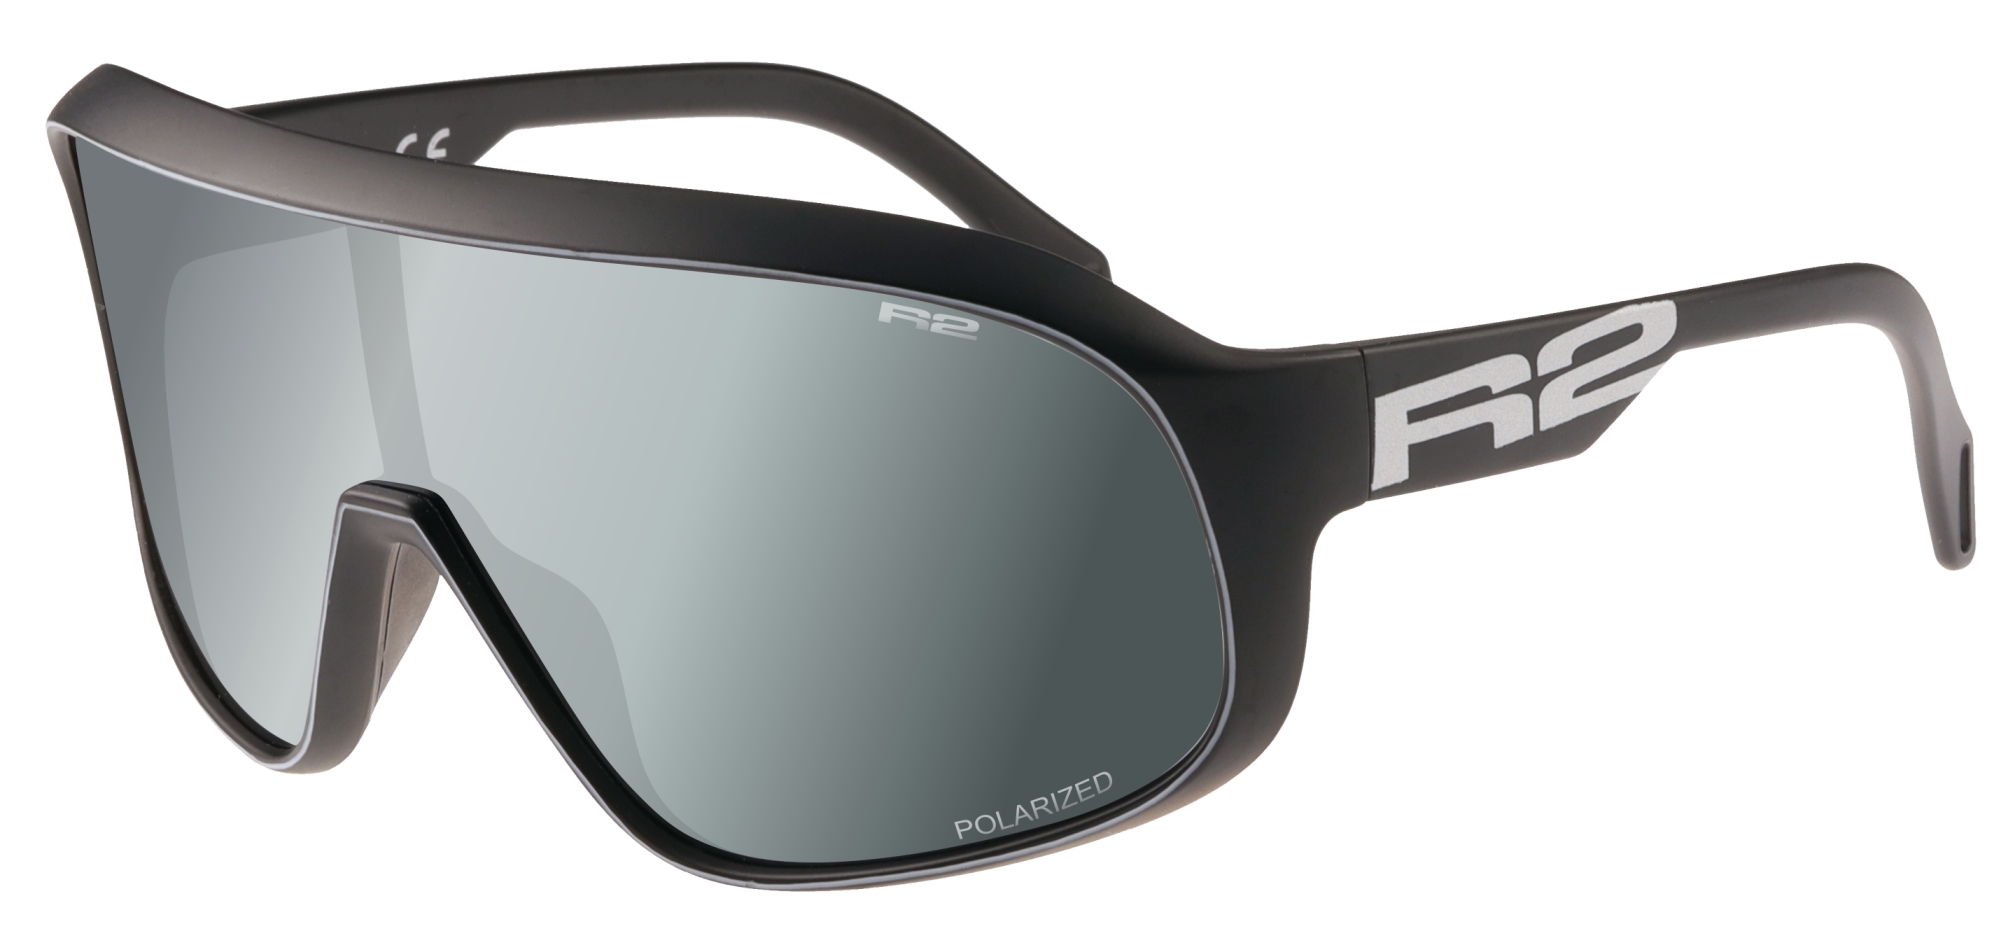 Sport sunglasses R2 FALCON AT105F